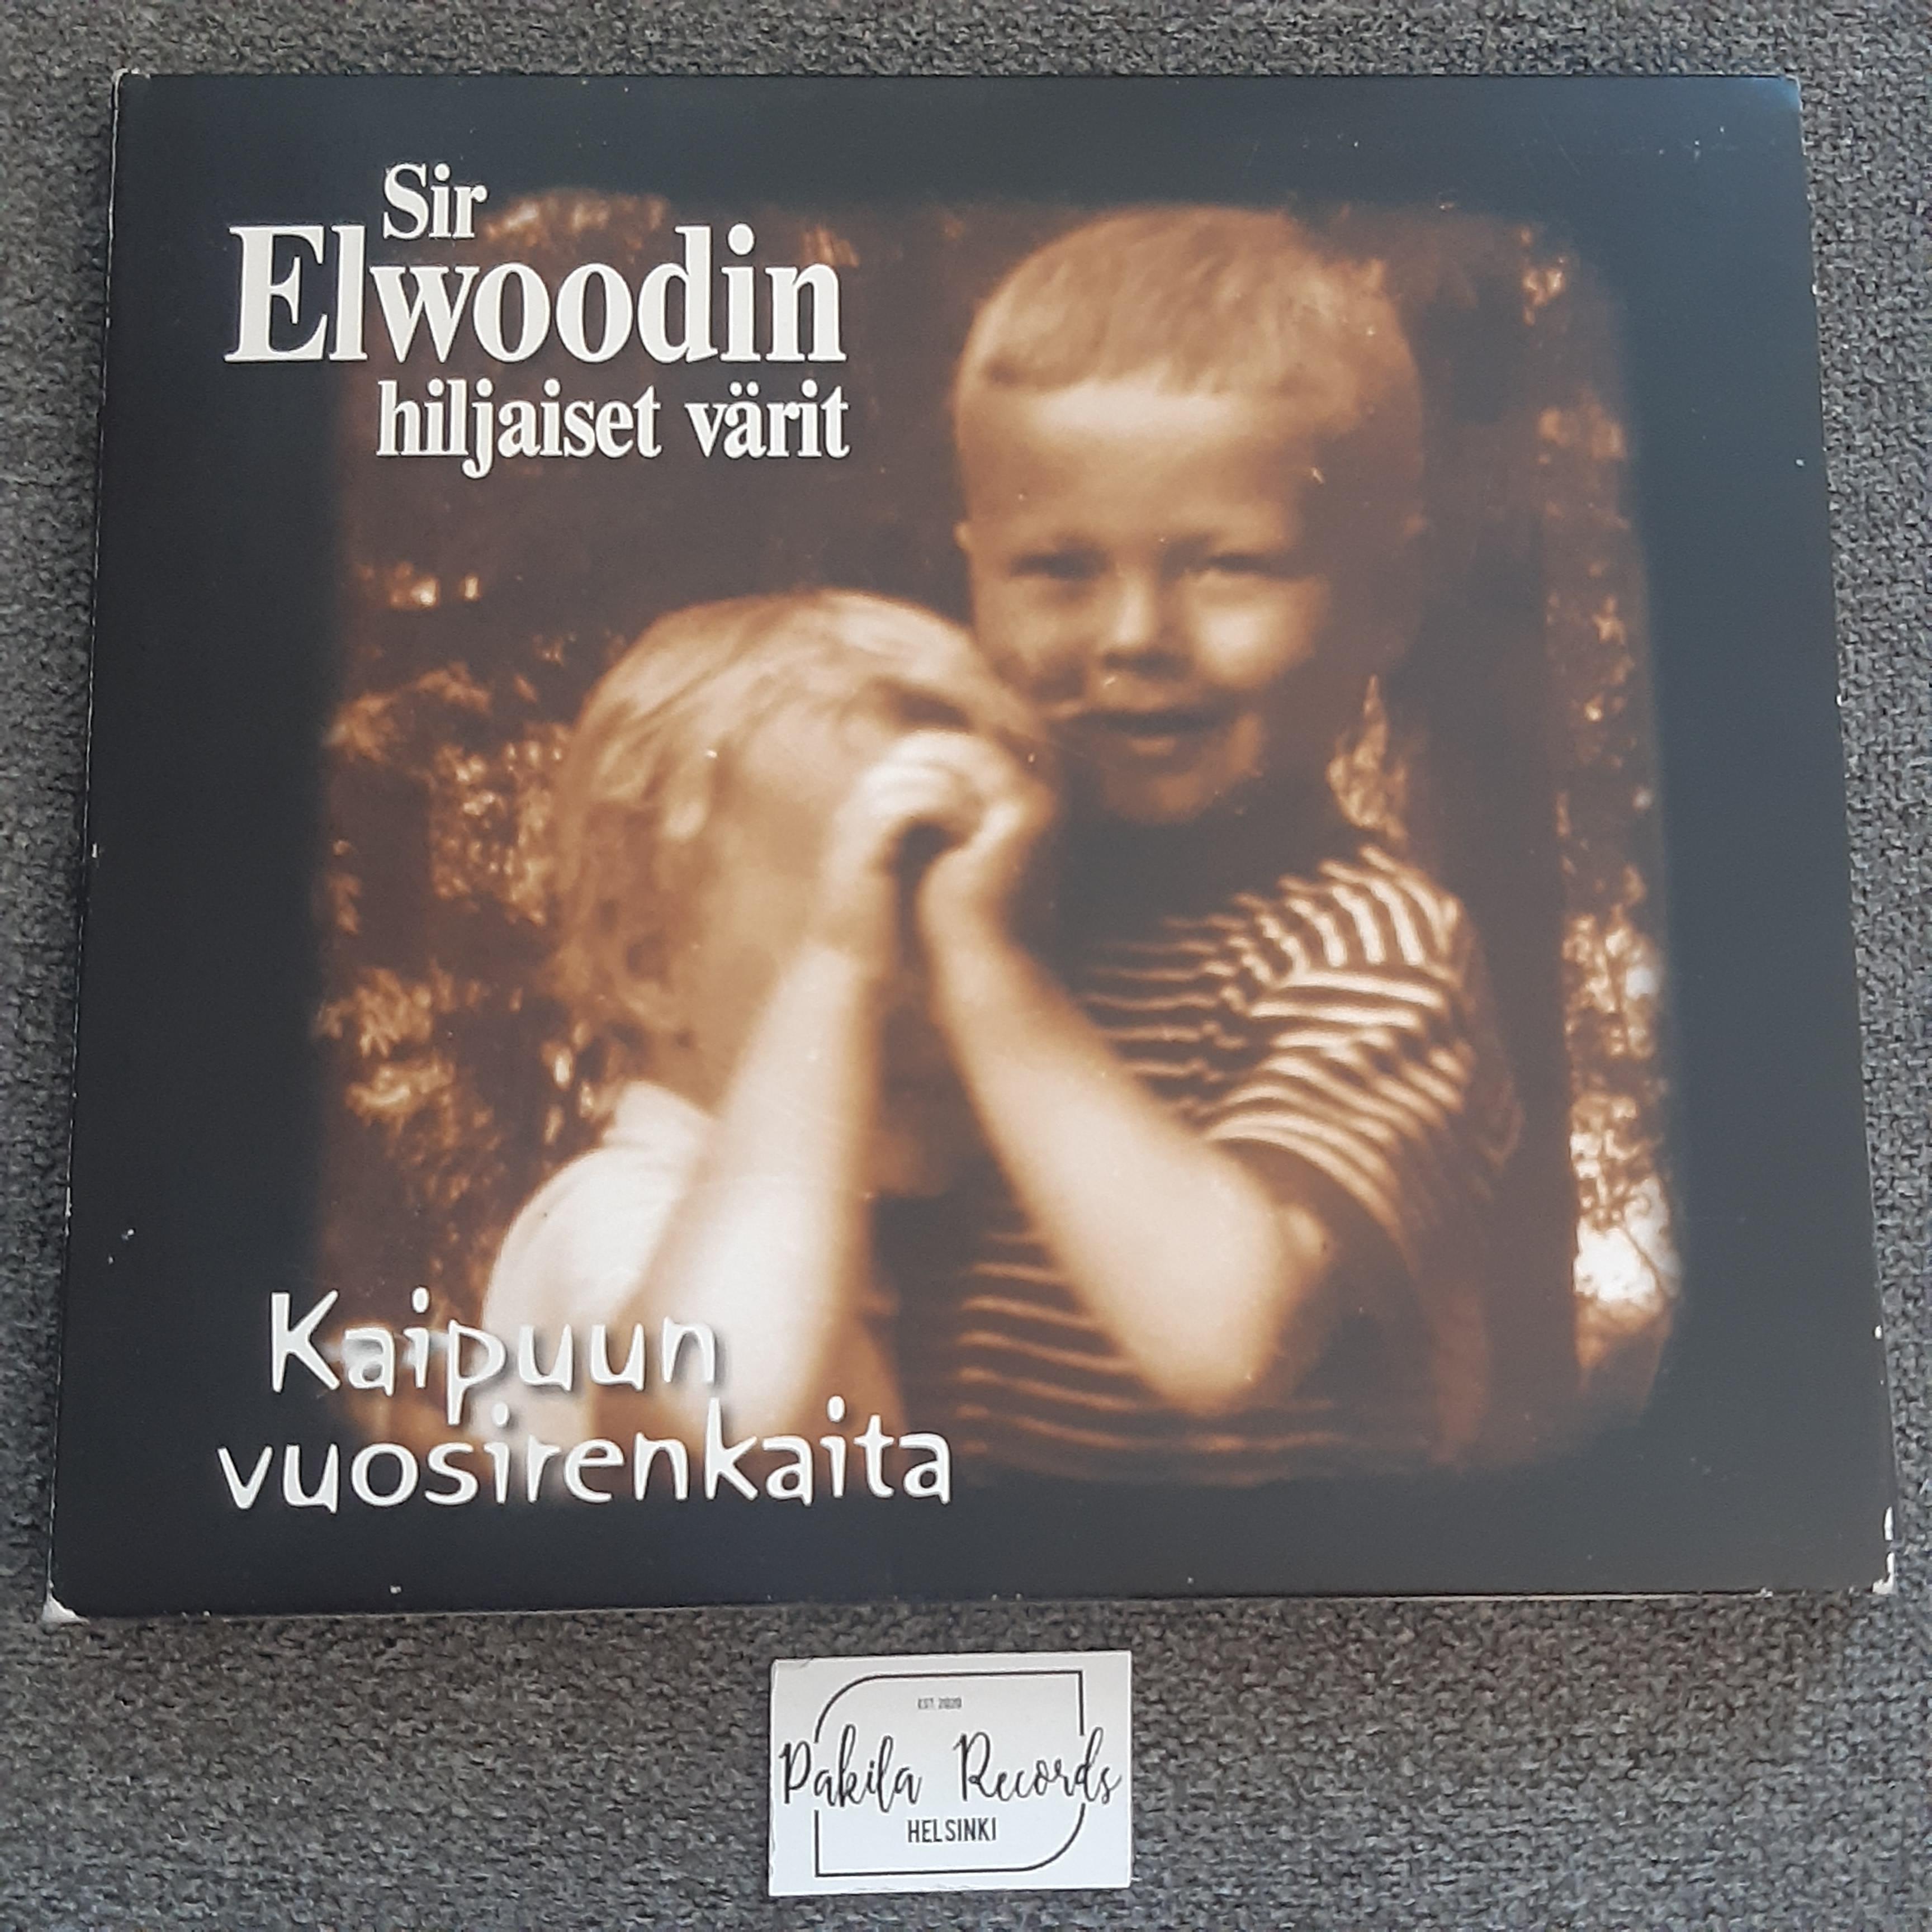 Sir Elwoodin hiljaiset värit - Kaipuun vuosirenkaita - CD (käytetty)